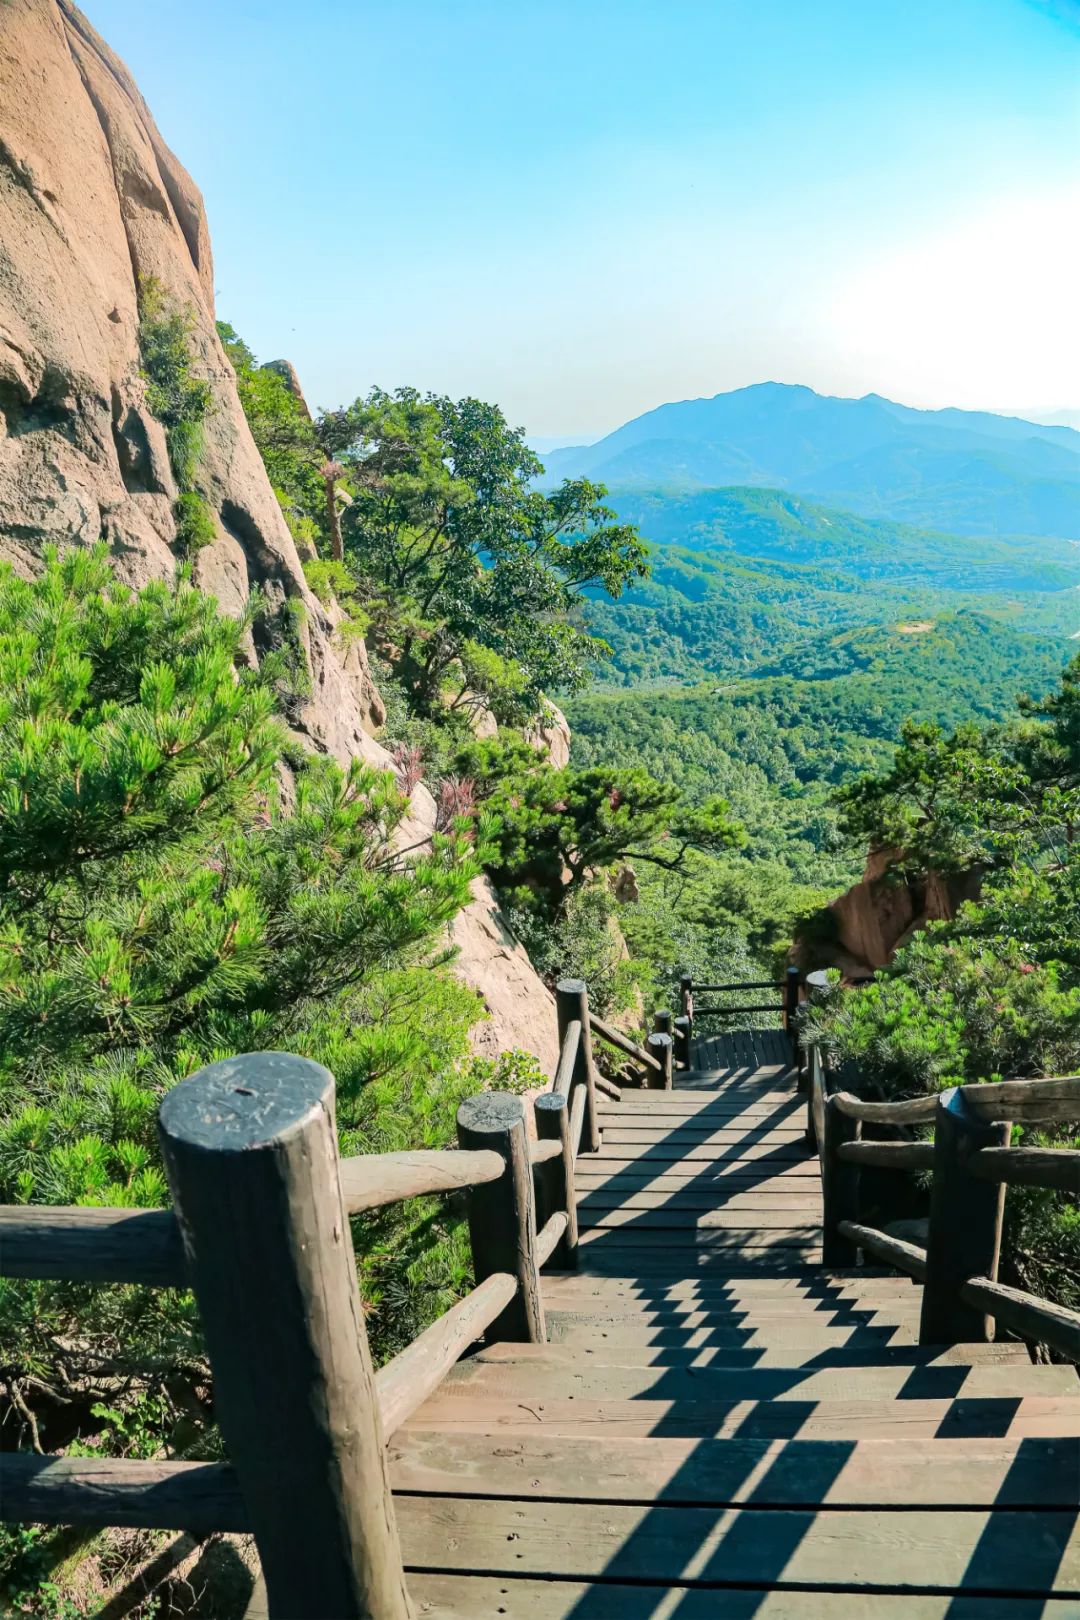 天崮山原生态旅游风景区是国家3a级旅游景区,矗立于中国苹果之都